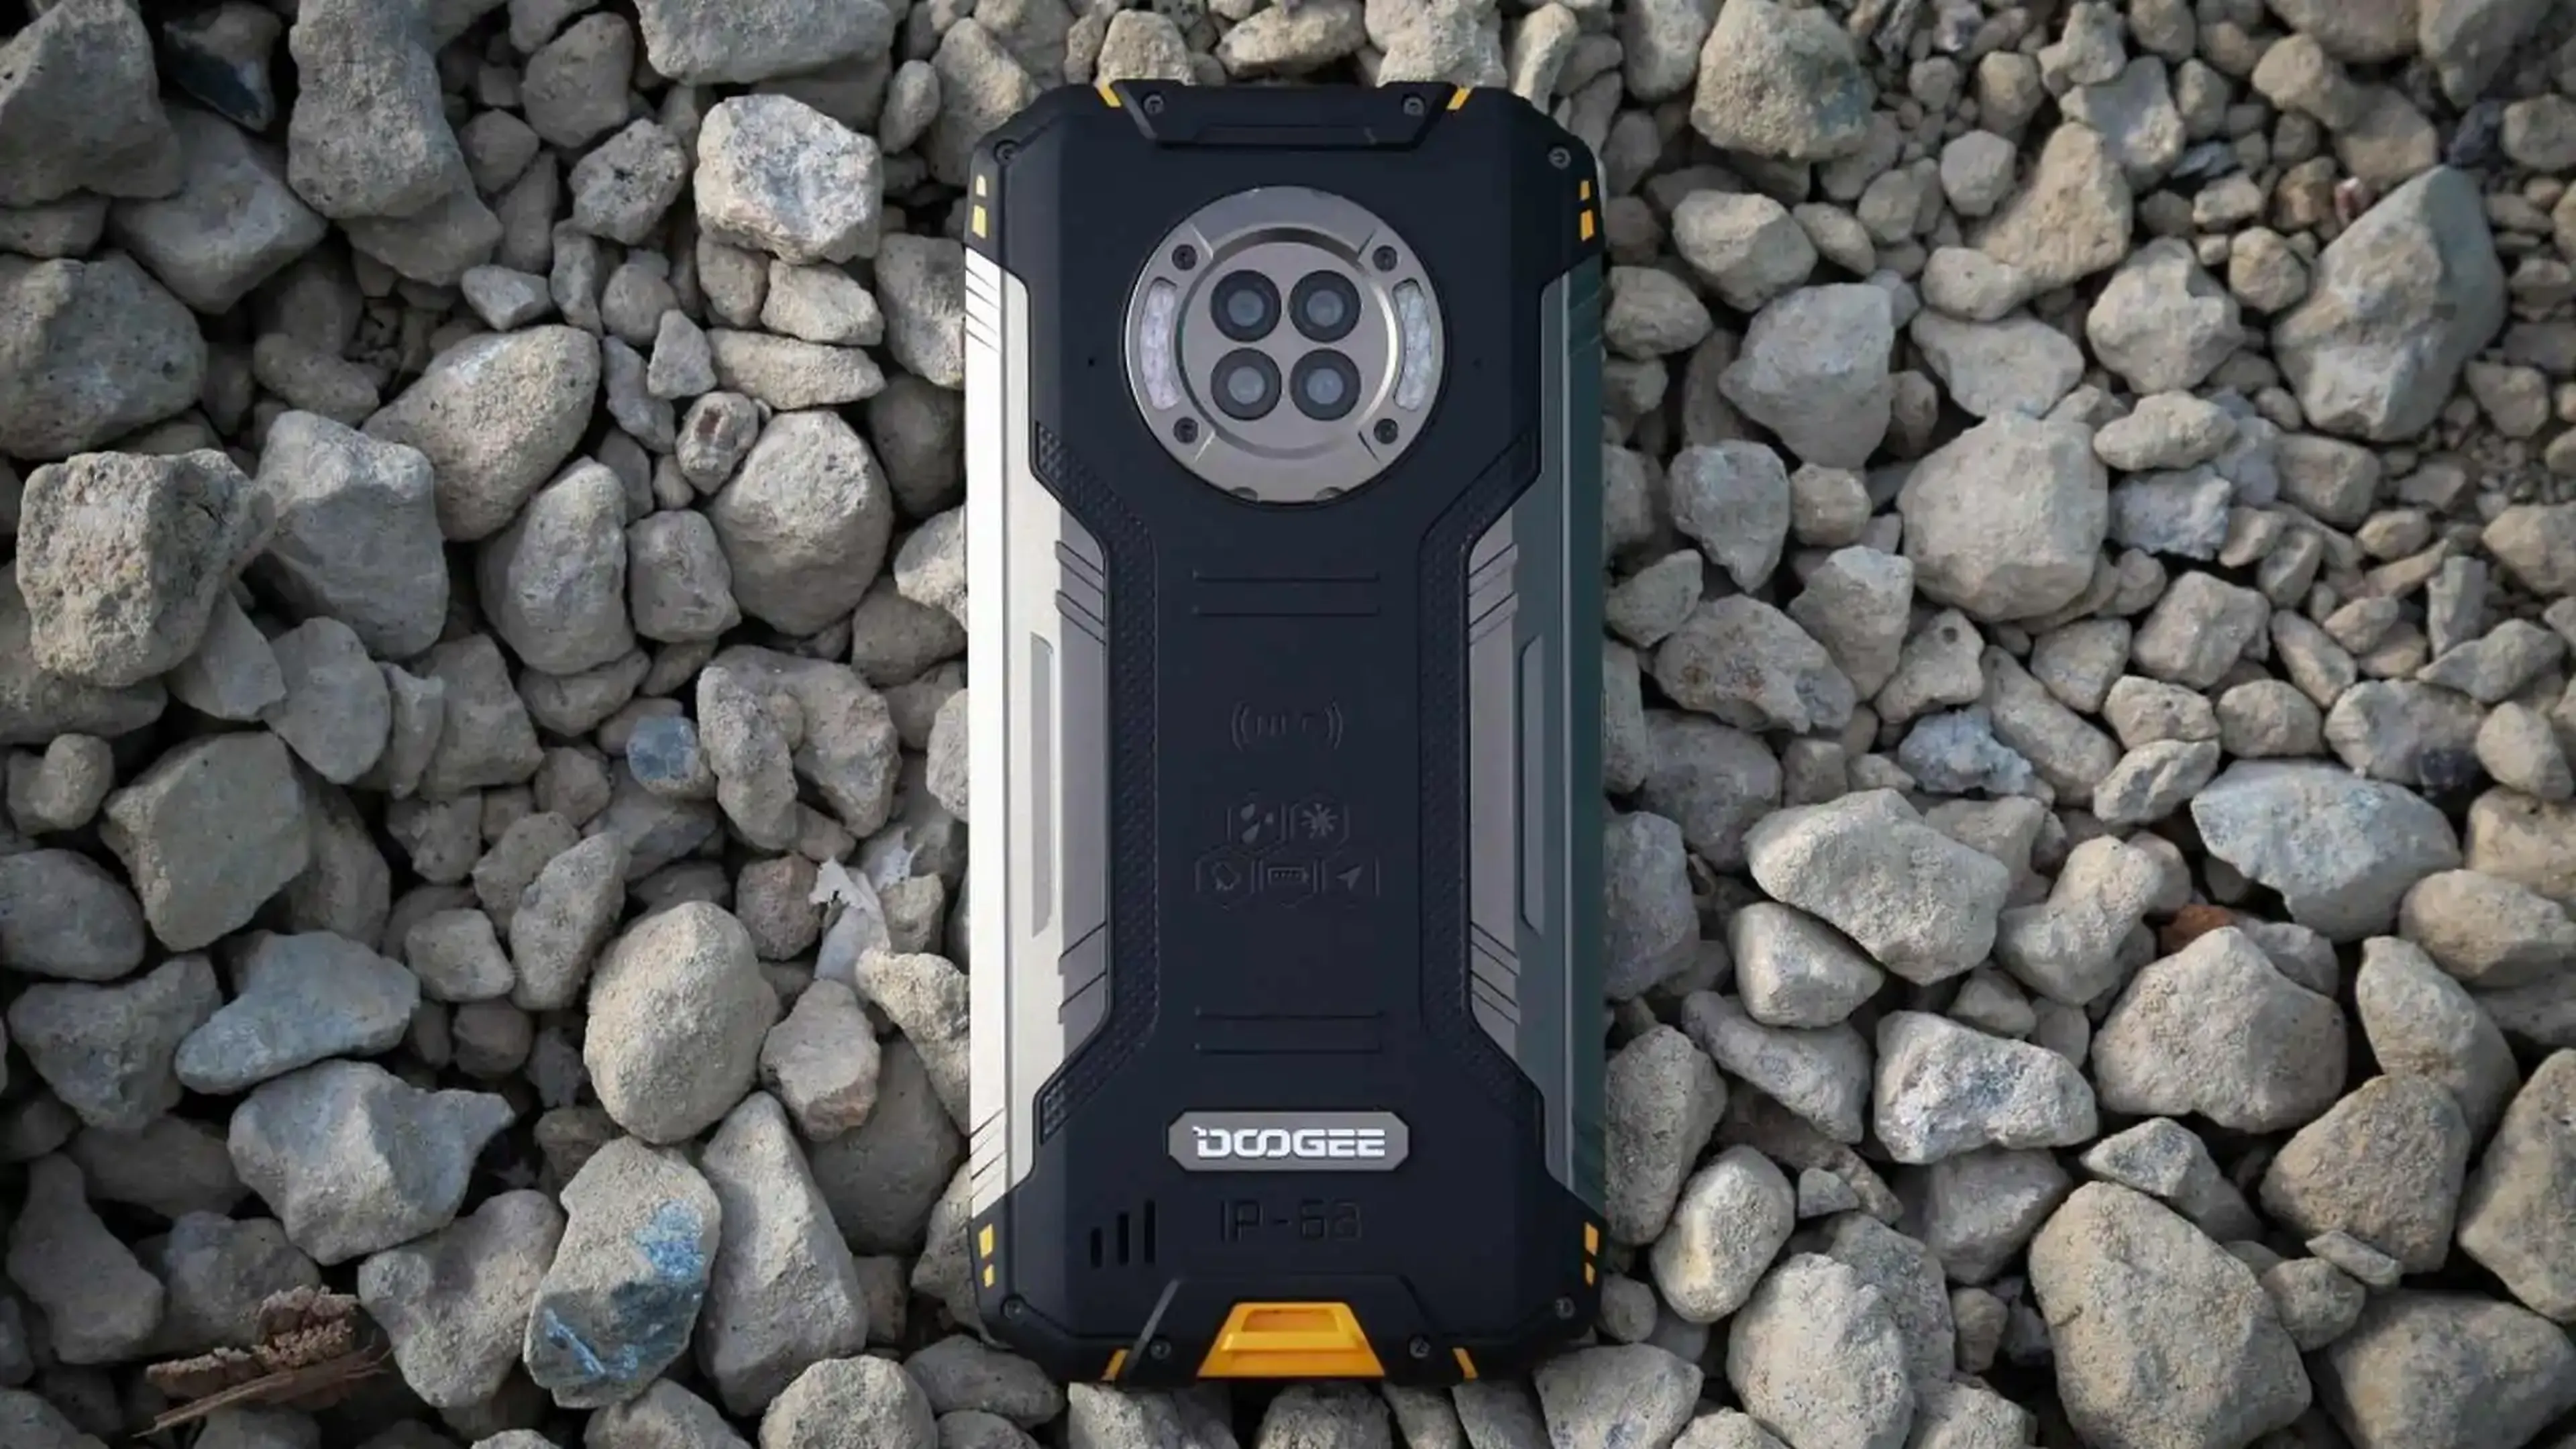 DOOGEE S86 Pro